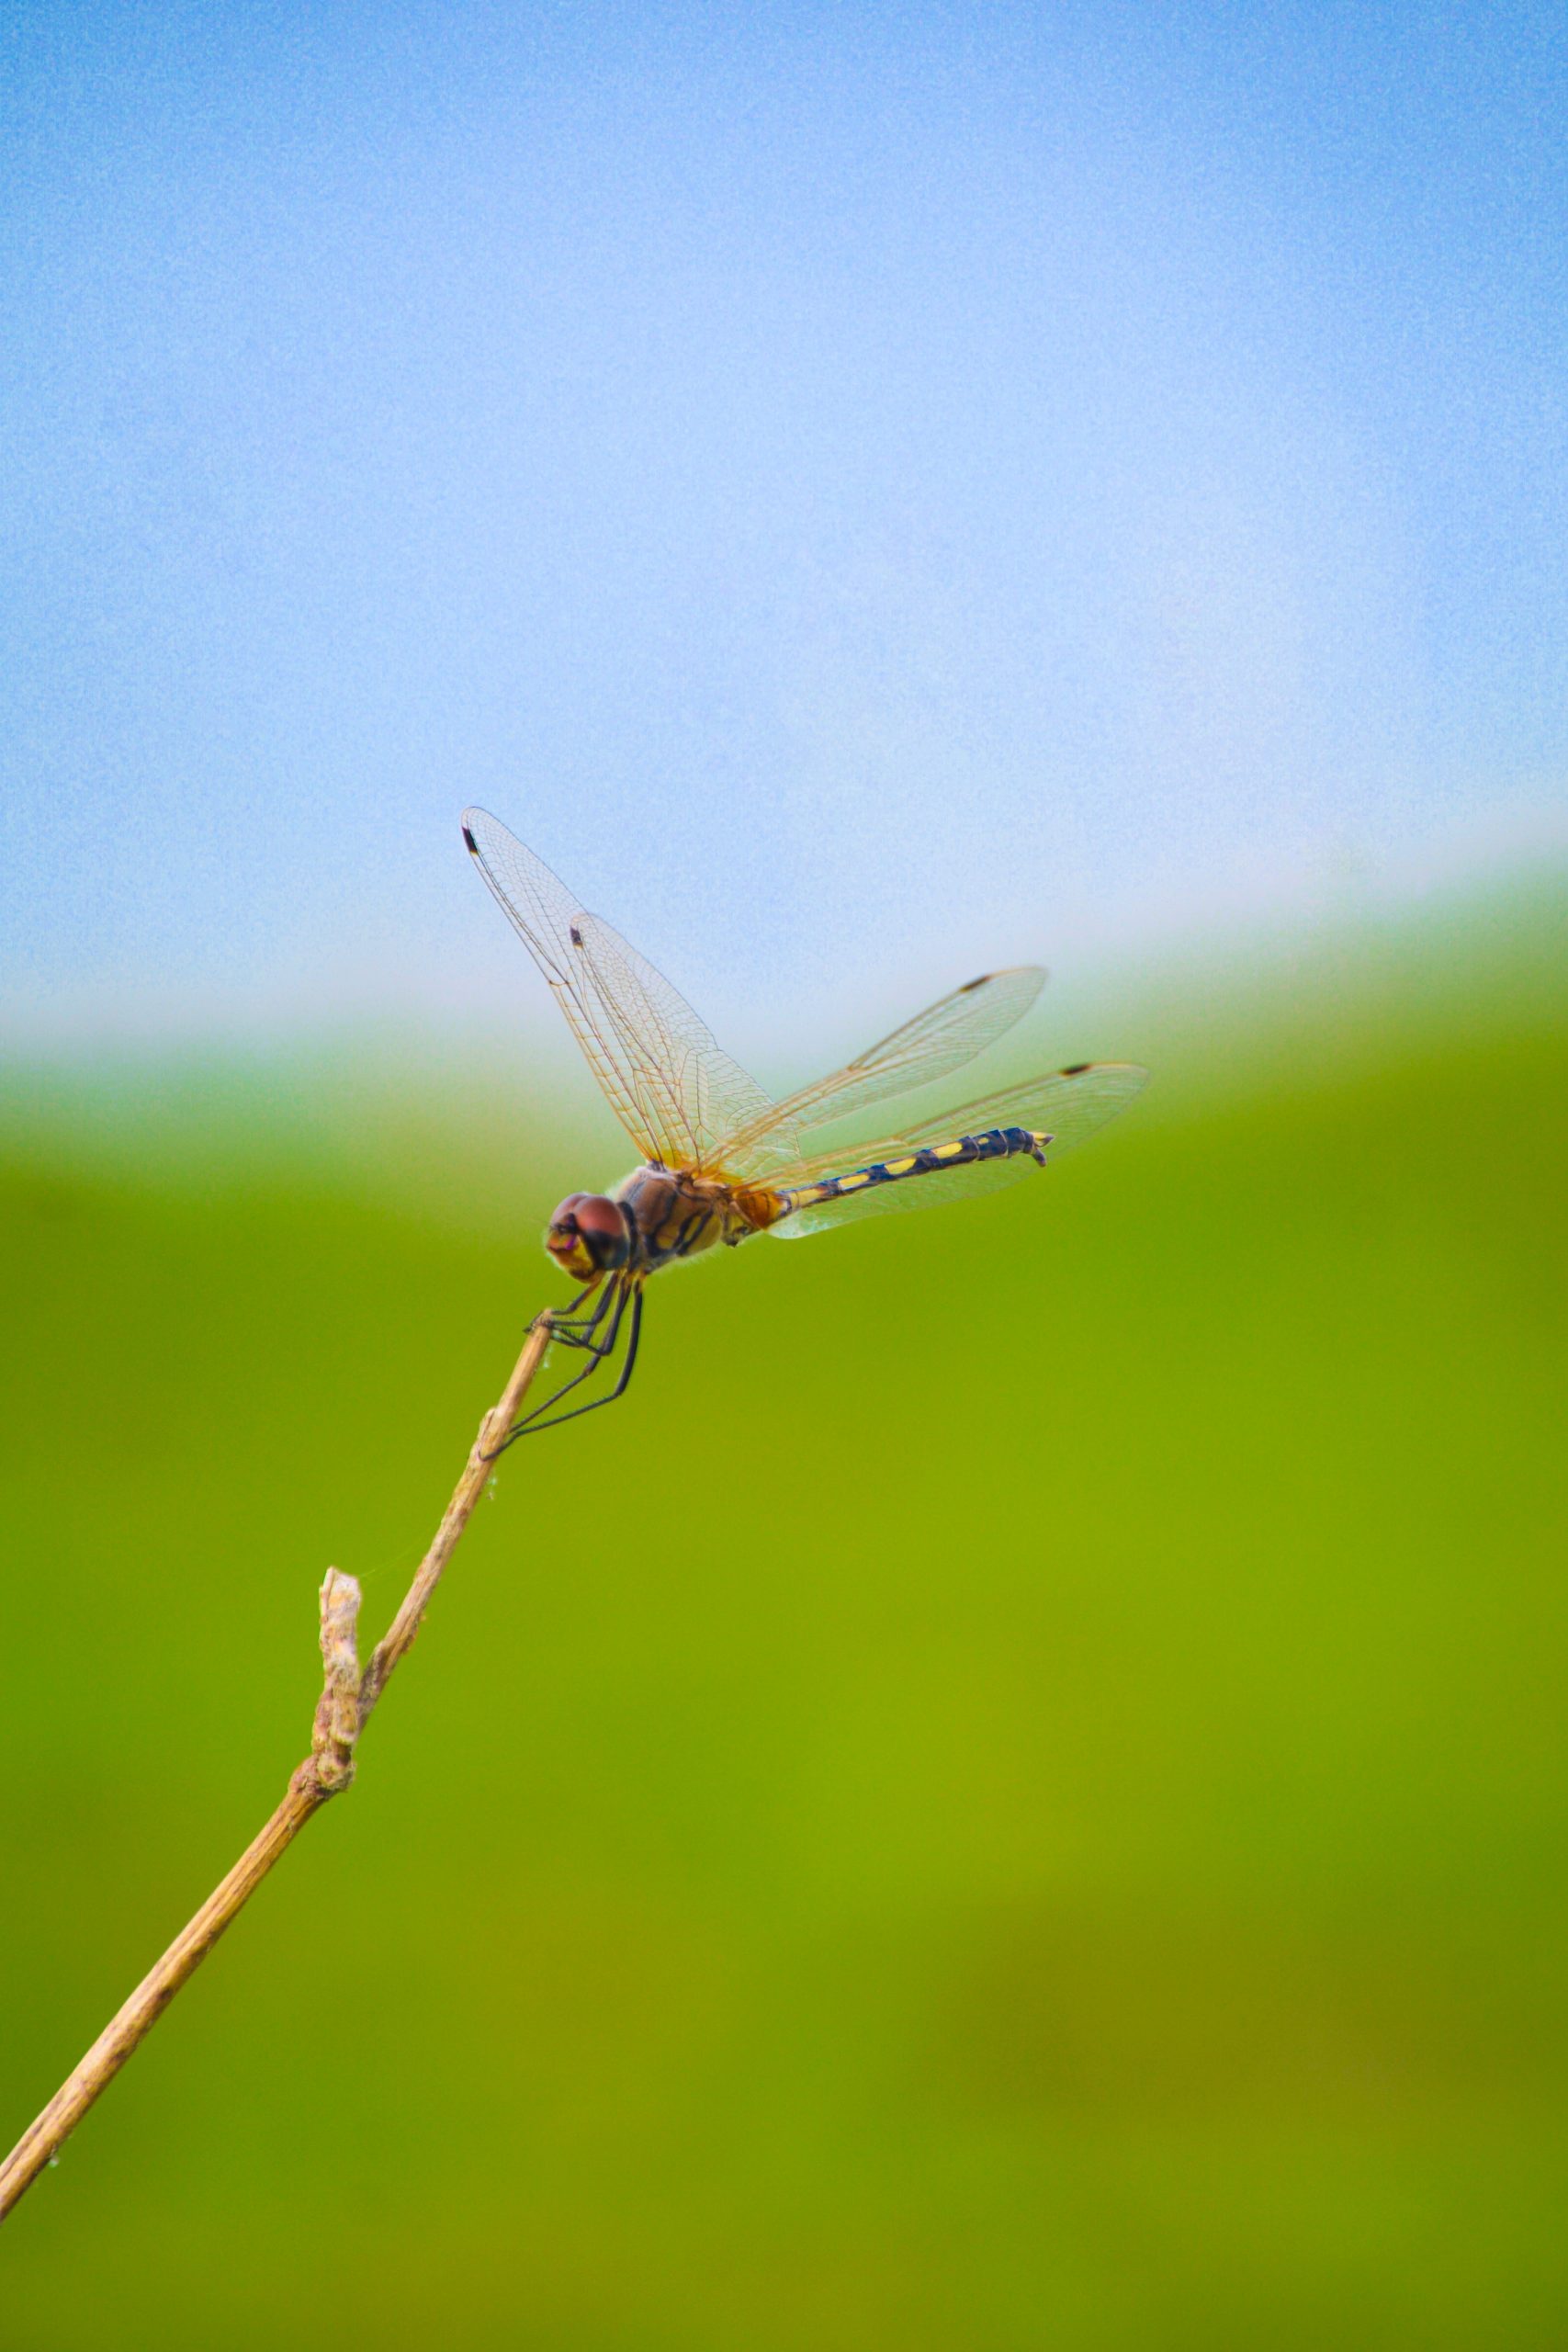 dragonfly on a twig